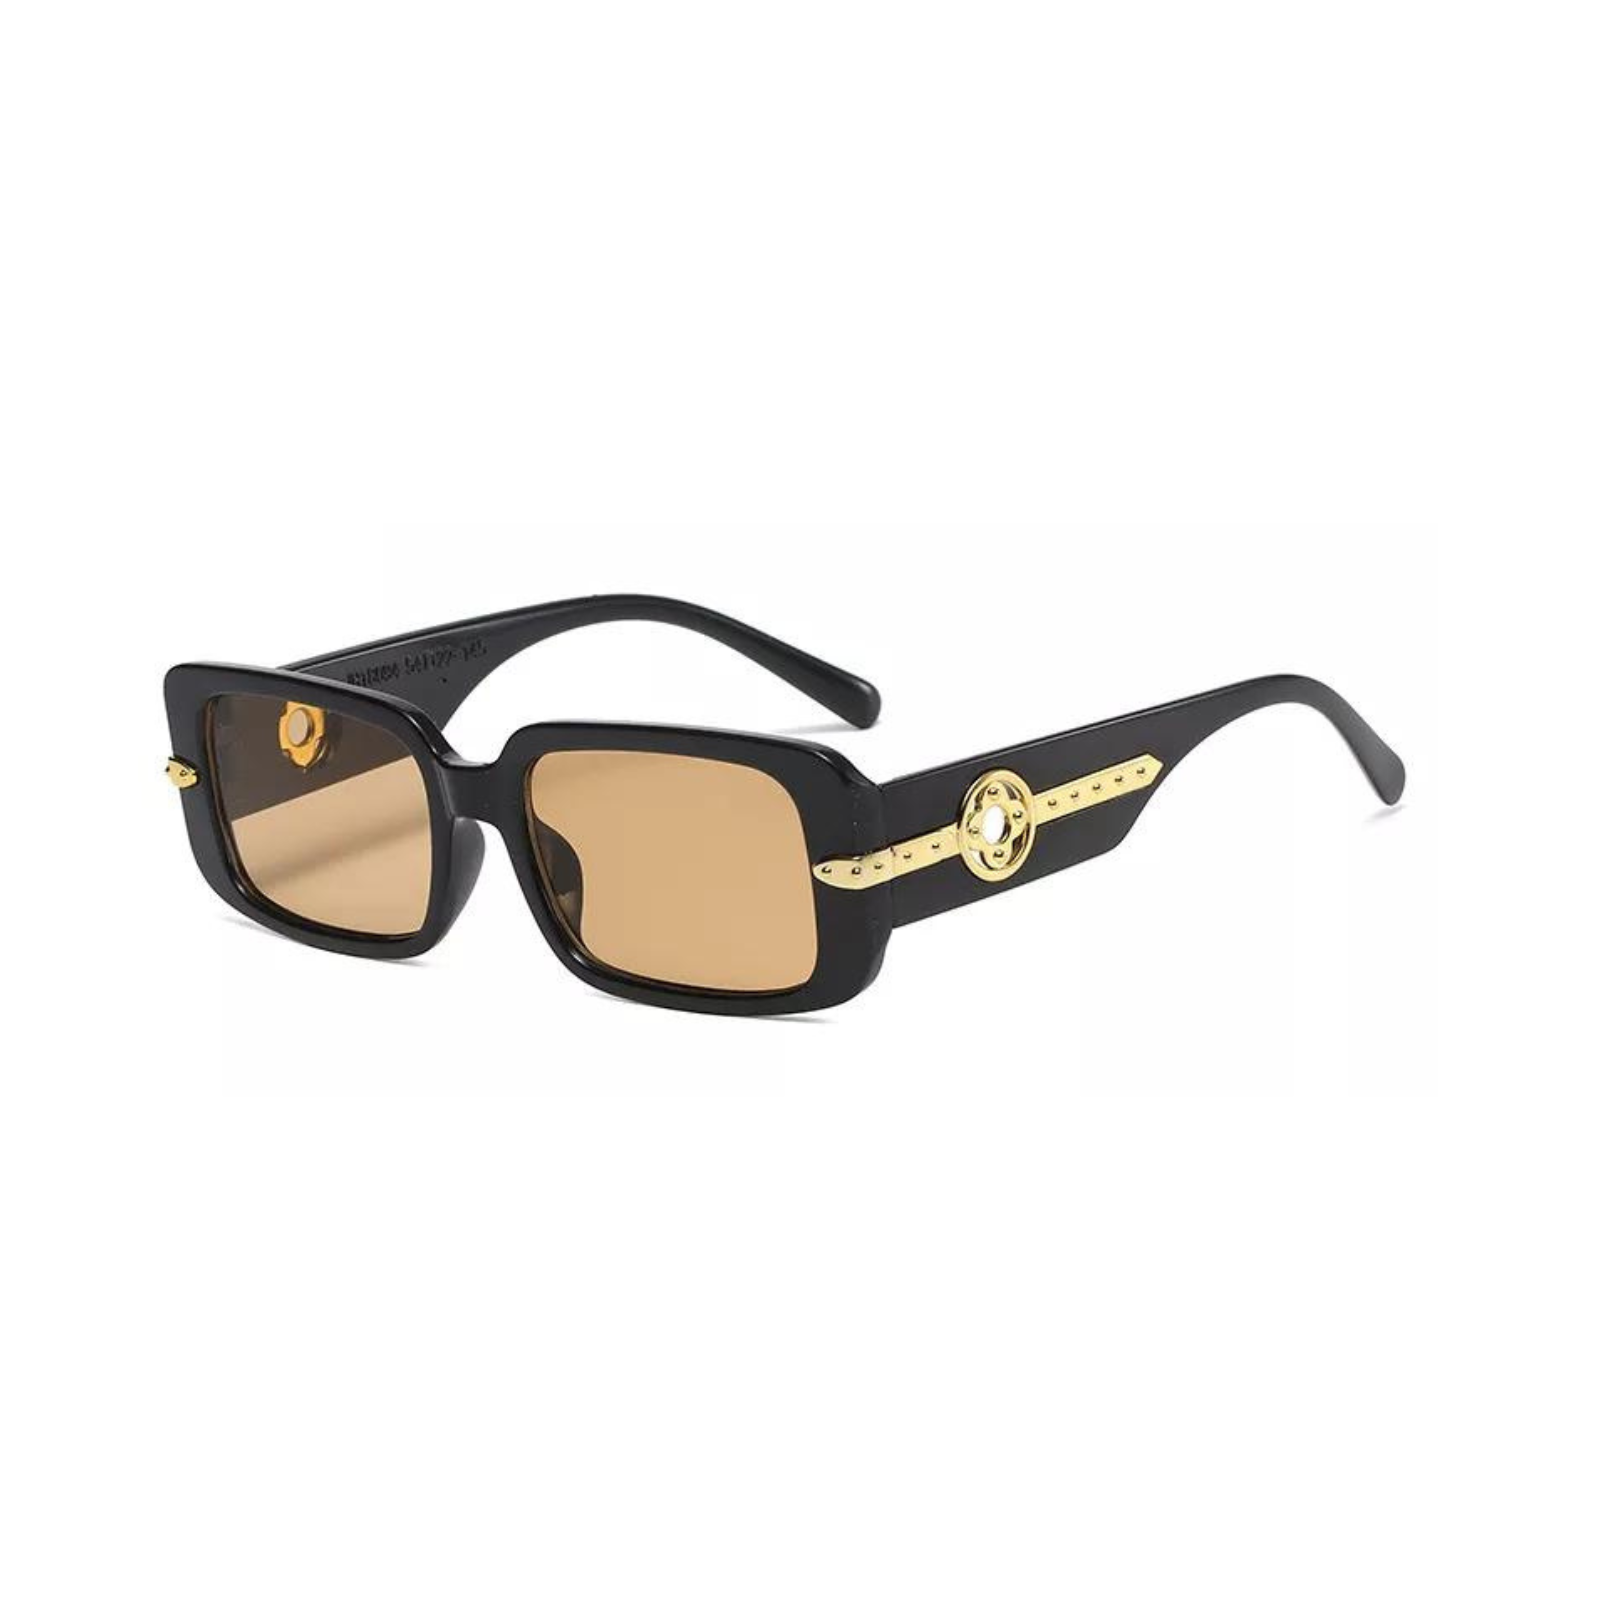 Kate Square Rectangle Sunglasses + Black / Tea